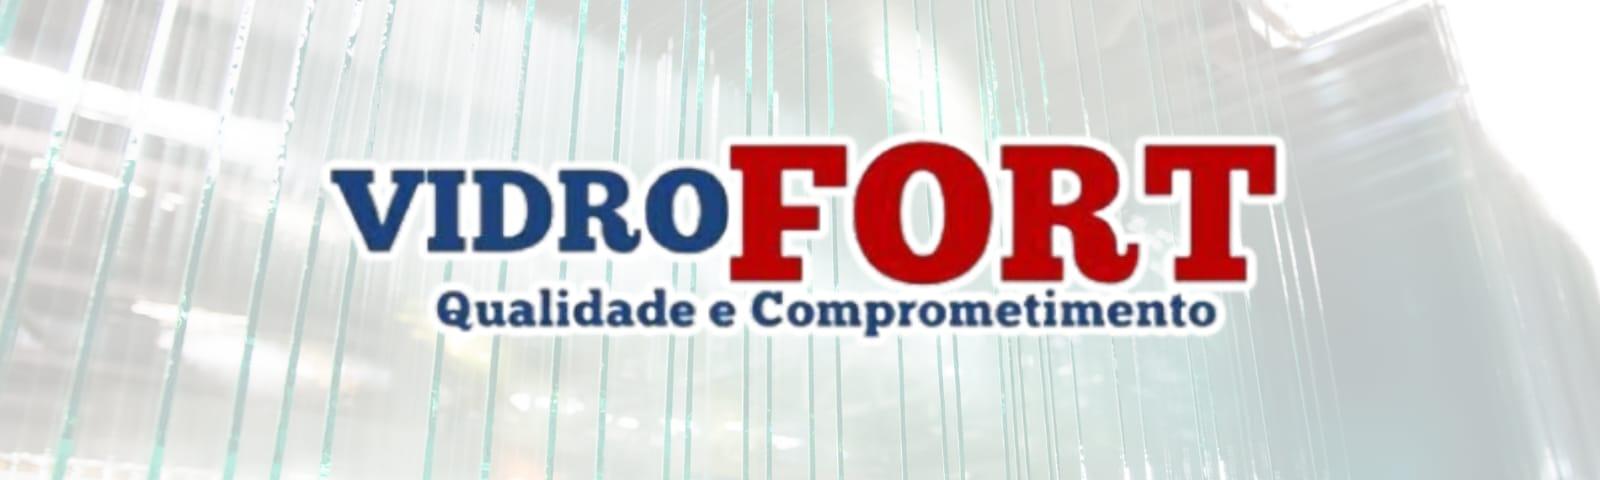 banner da empresa Vidro Fort